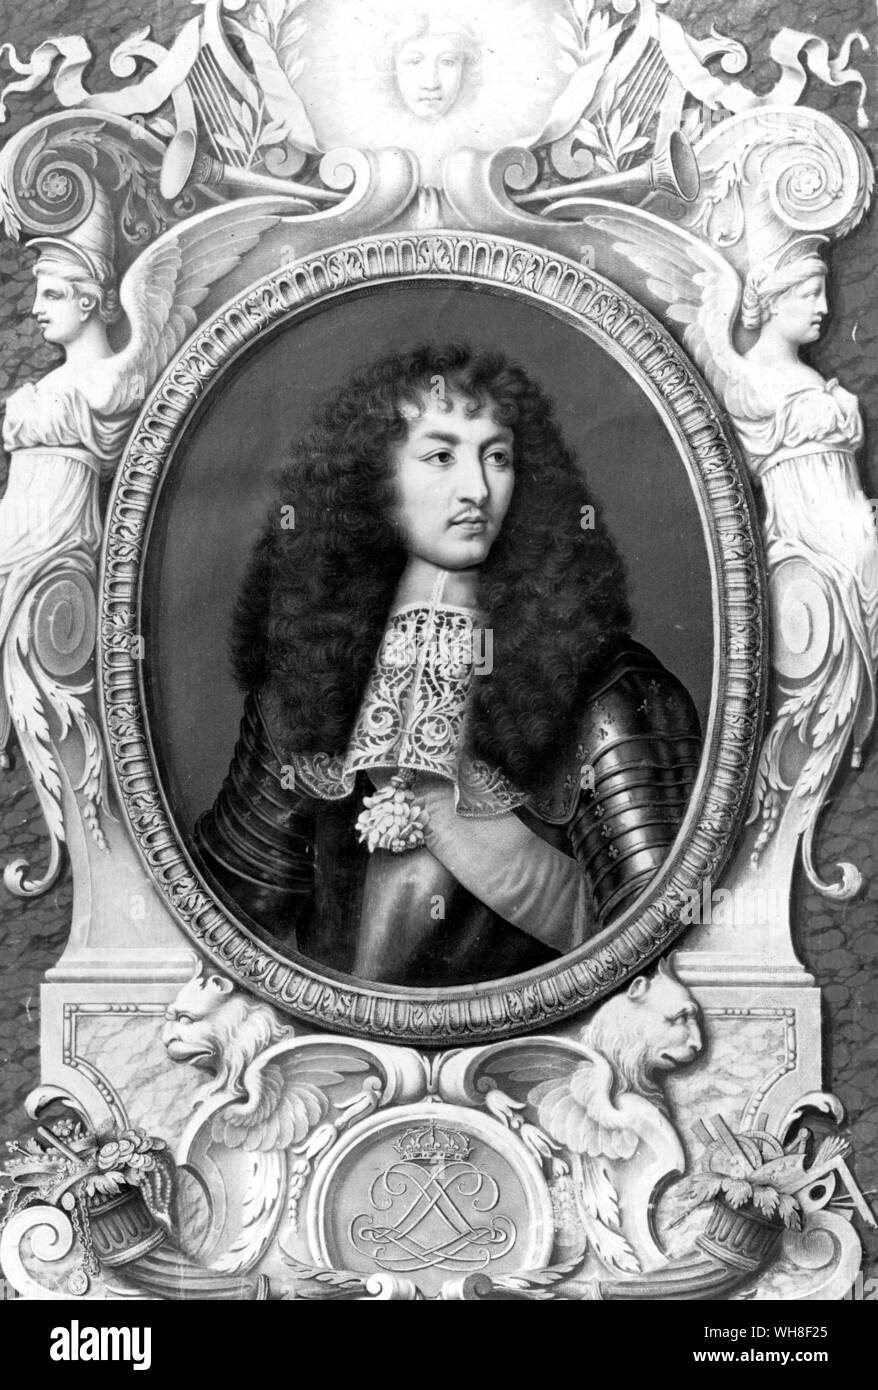 Luigi XIV Re di Francia, il Re Sole, (1638-1715), regnò 1643-1715. Ritratto di Robert Nic. Il suo regno in Francia è stato il più lungo nella storia europea e ha coinciso con la gloria anni della monarchia francese. Foto Stock